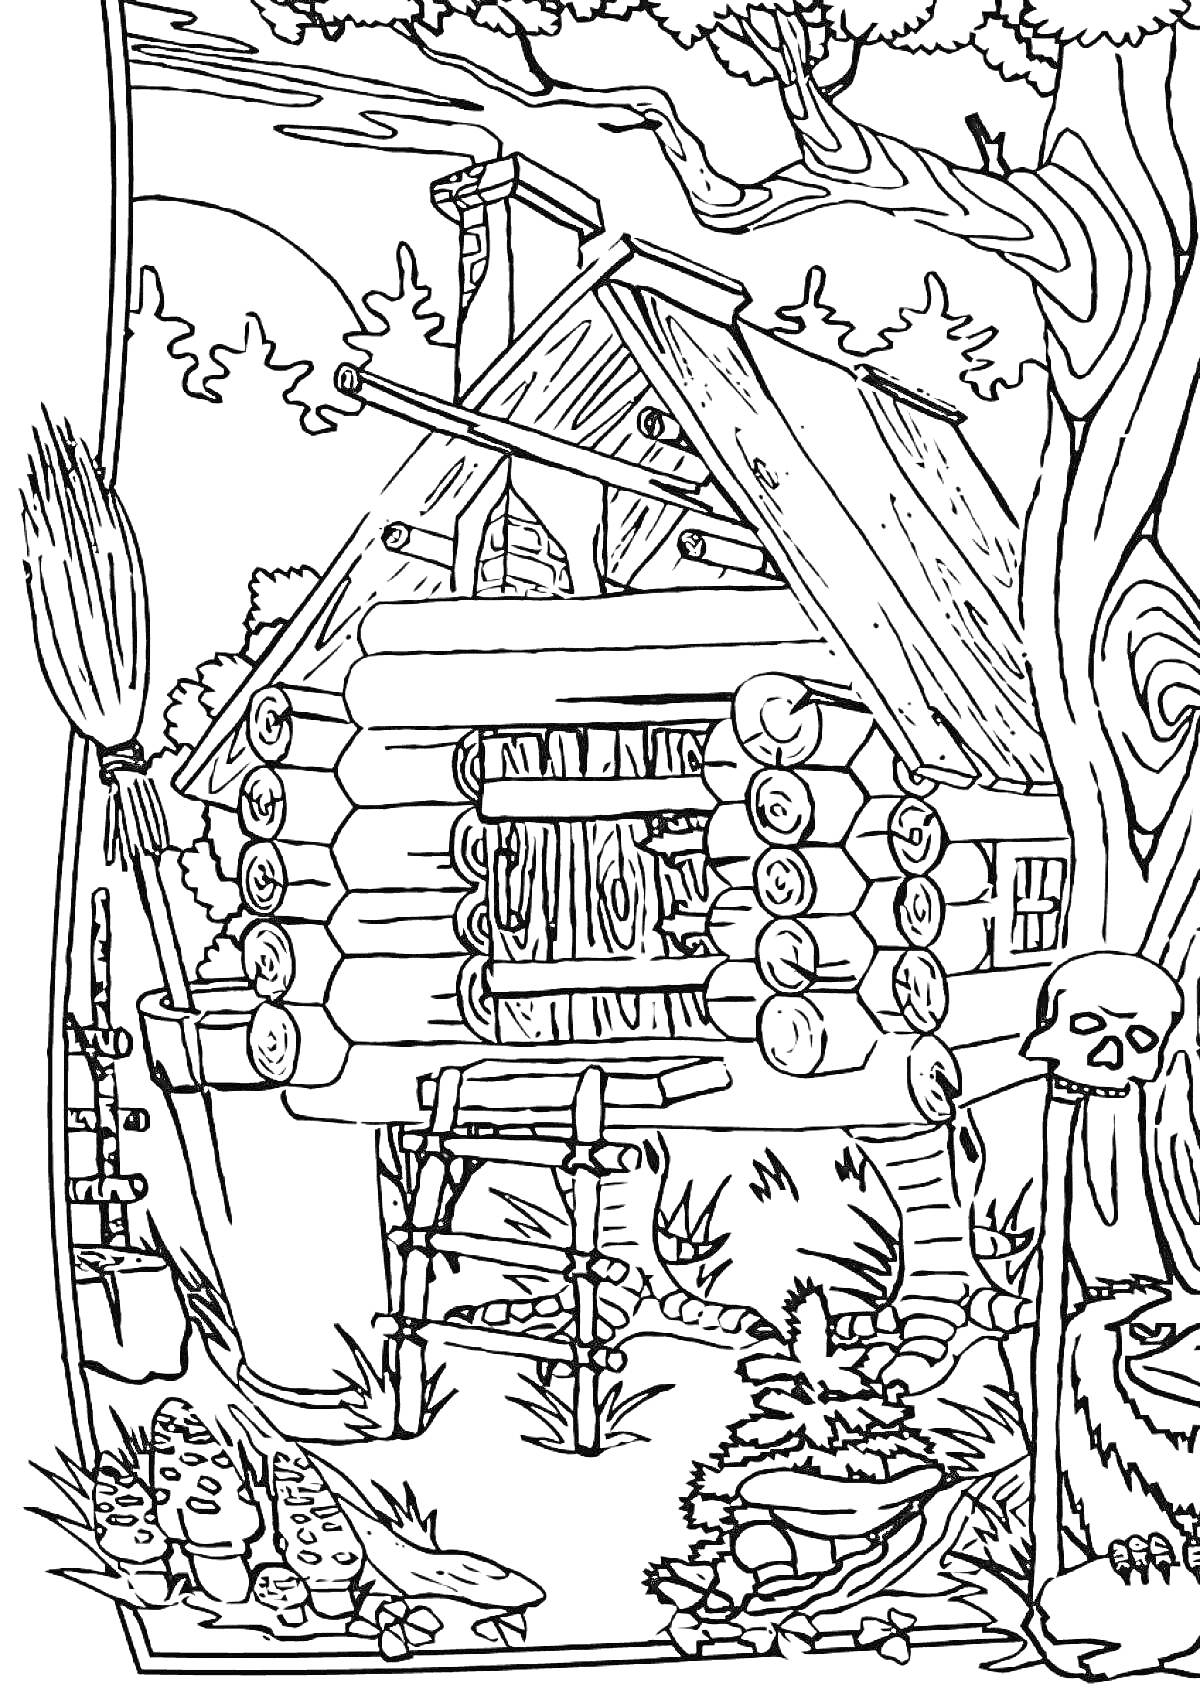 Раскраска Избушка на курьих ножках в лесу с метлой, деревьями и черепом на столбе